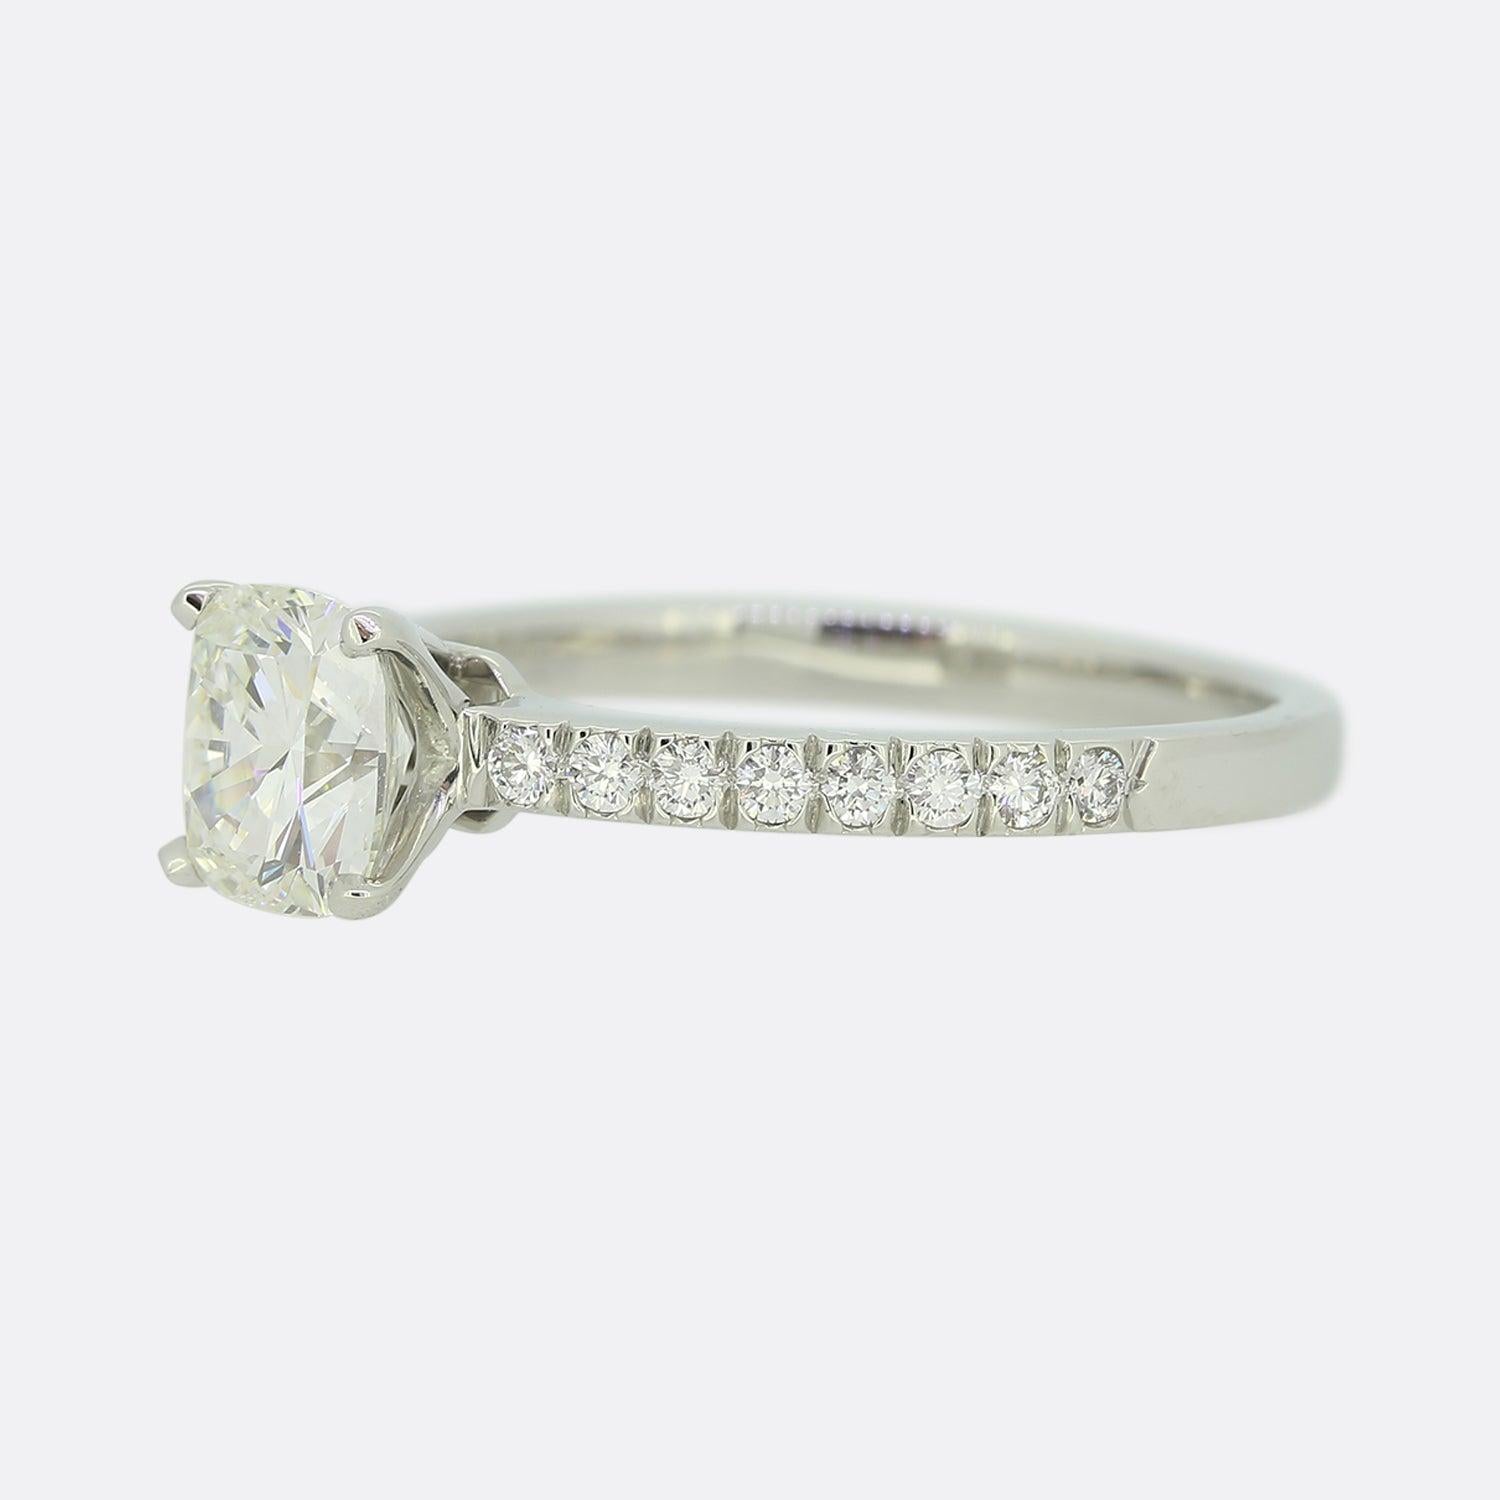 Dies ist eine wunderbare Tiffany & Co. Platin Solitär Verlobungsring. Der Mittelstein ist ein Diamant im Kissenschliff von 1,10 Karat, gefasst in der ikonischen Tiffany-Fassung mit vier Klauen.

Zustand: Gebraucht (Sehr gut)
Gewicht: 4,2